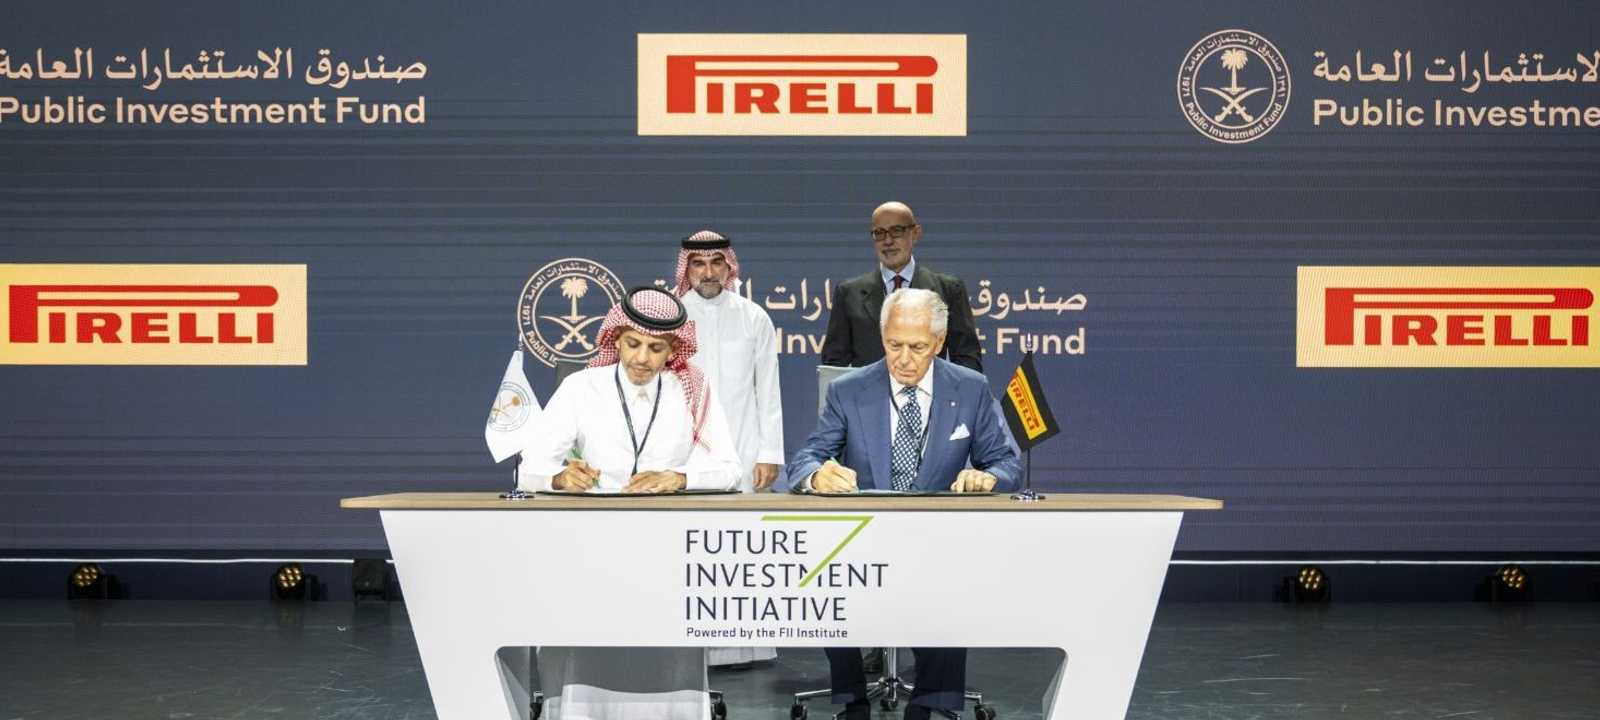 اتفاق بين بيريللي الإيطالية وصندوق الاستثمارات العامة